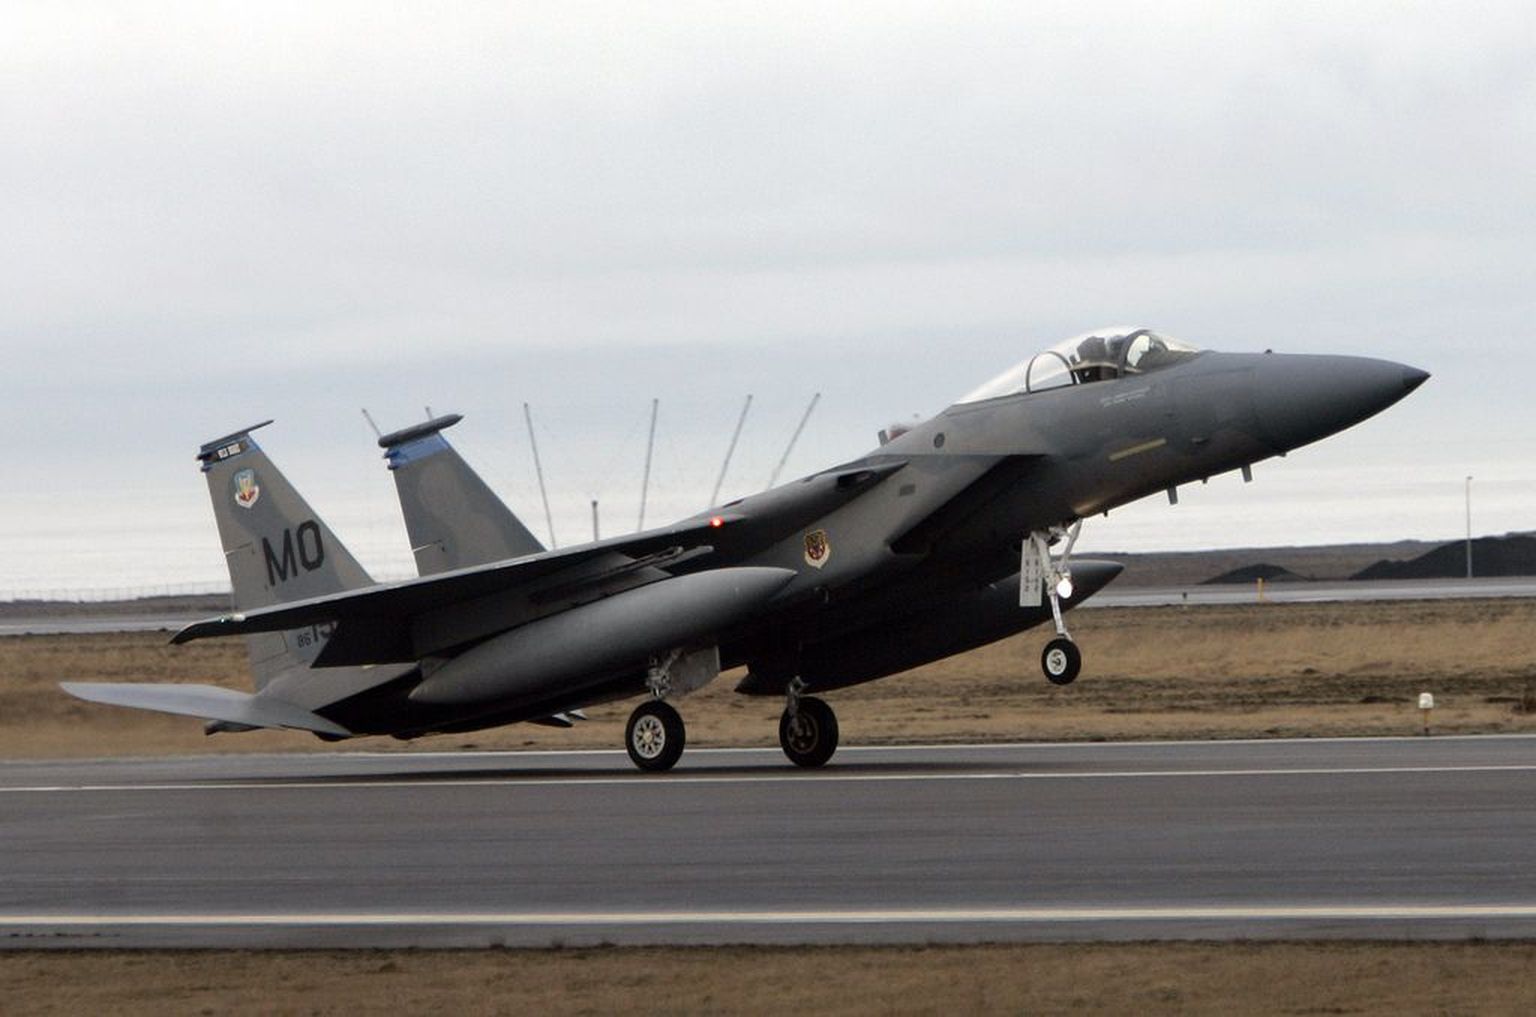 USA F15 hävituslennuk maandumas Keflavíki sõjaväebaasi. Pilt on illustratiivne.